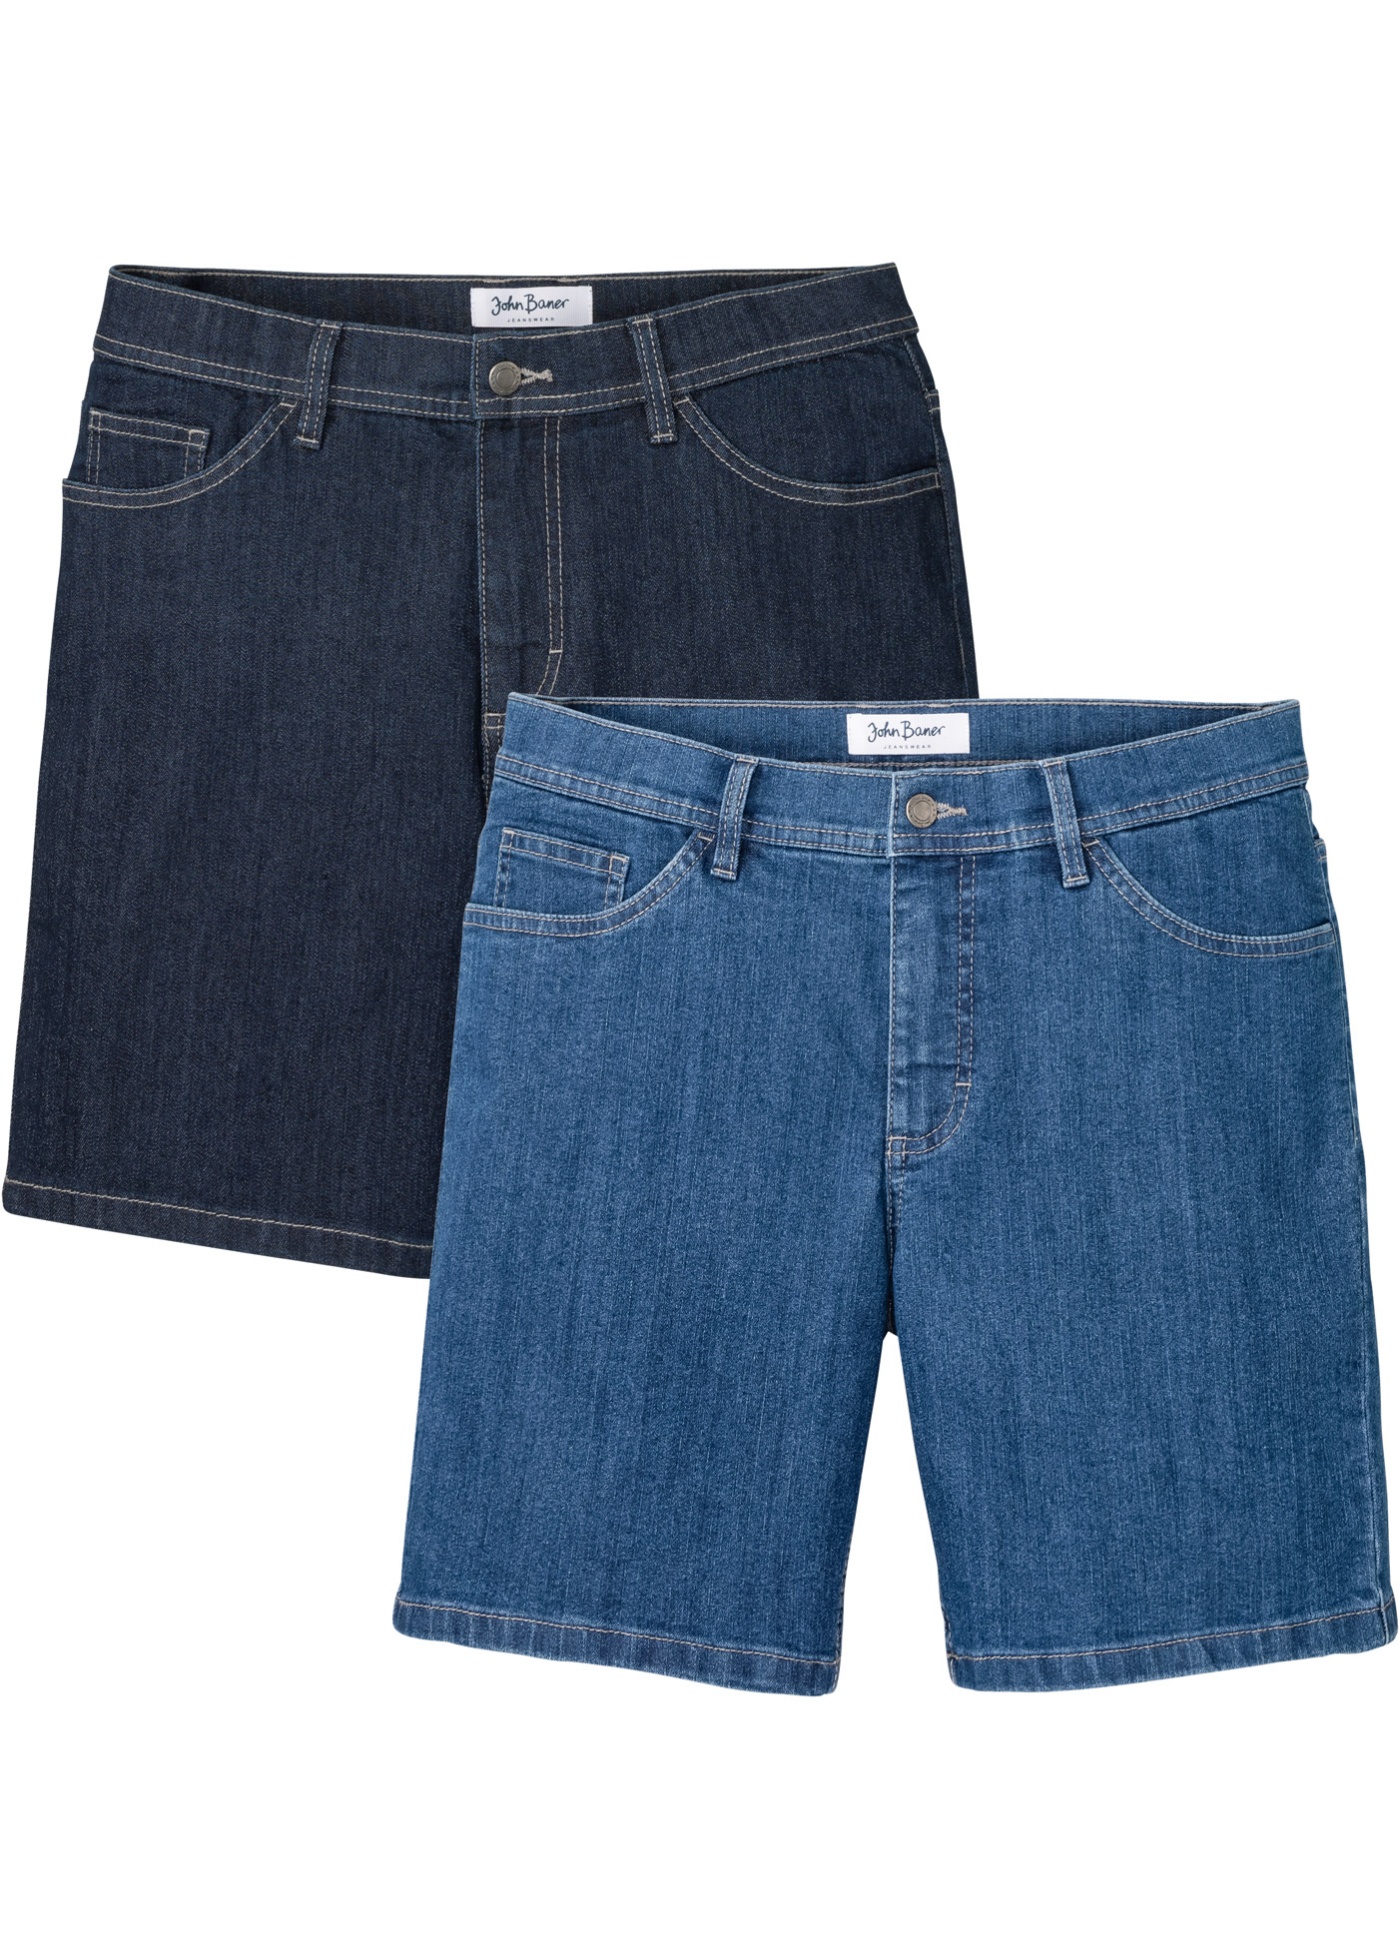 Stretch jeans short, regular fit (set van 2)